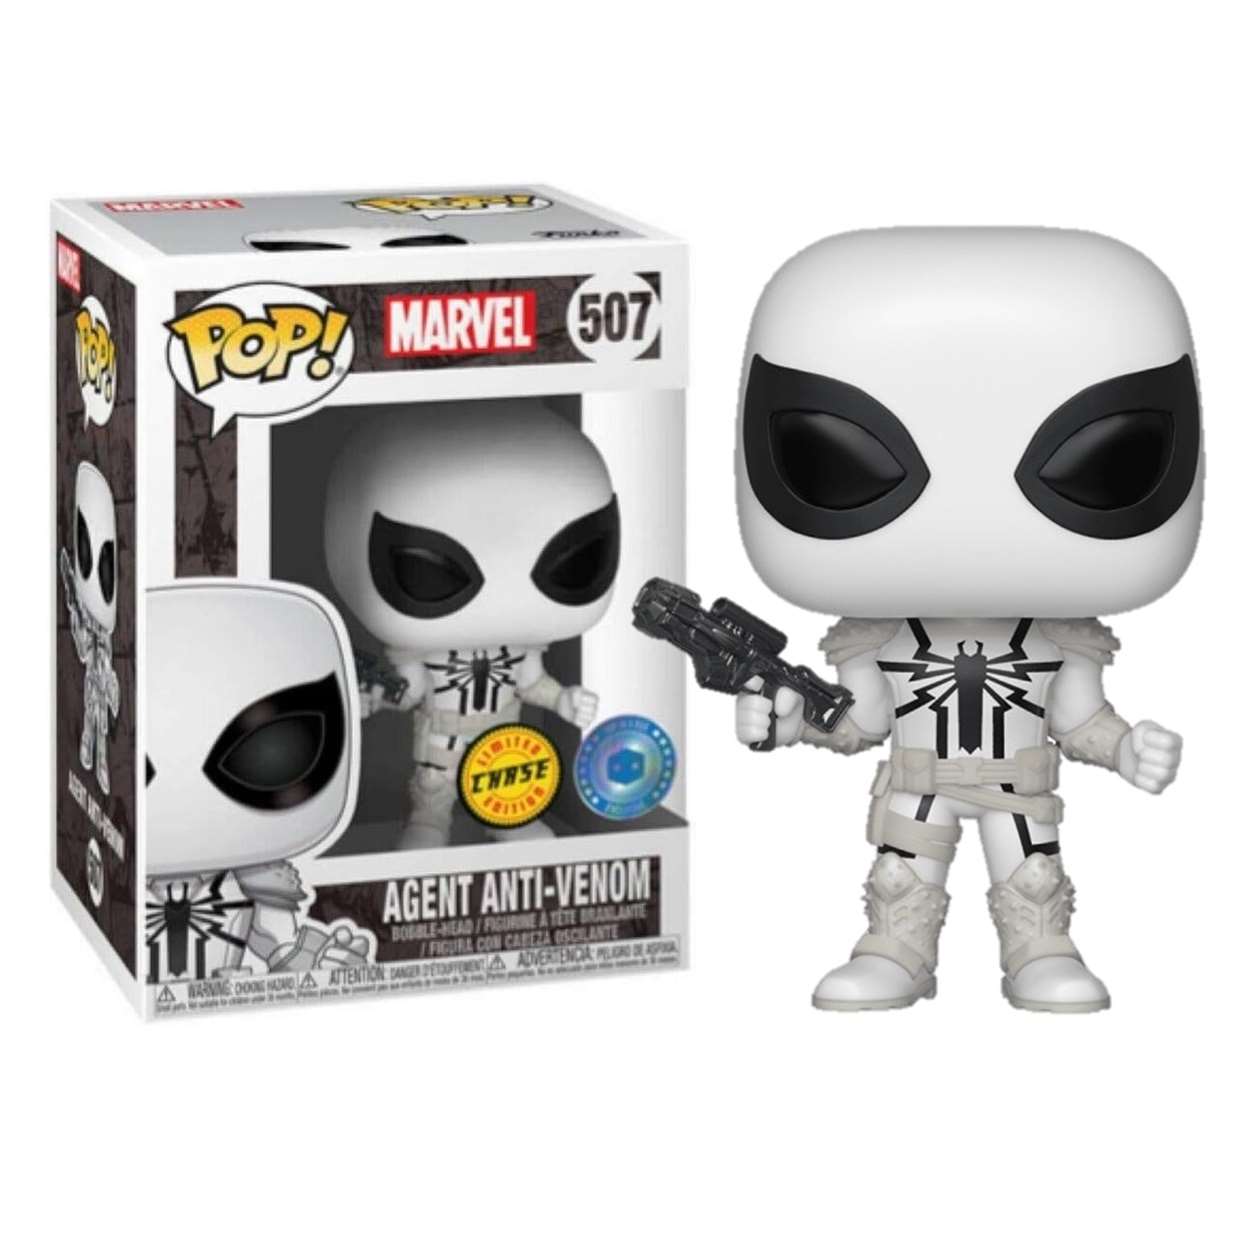 Agent Anti Venom #507 Funko Pop! Exclusivo Pop In A Box